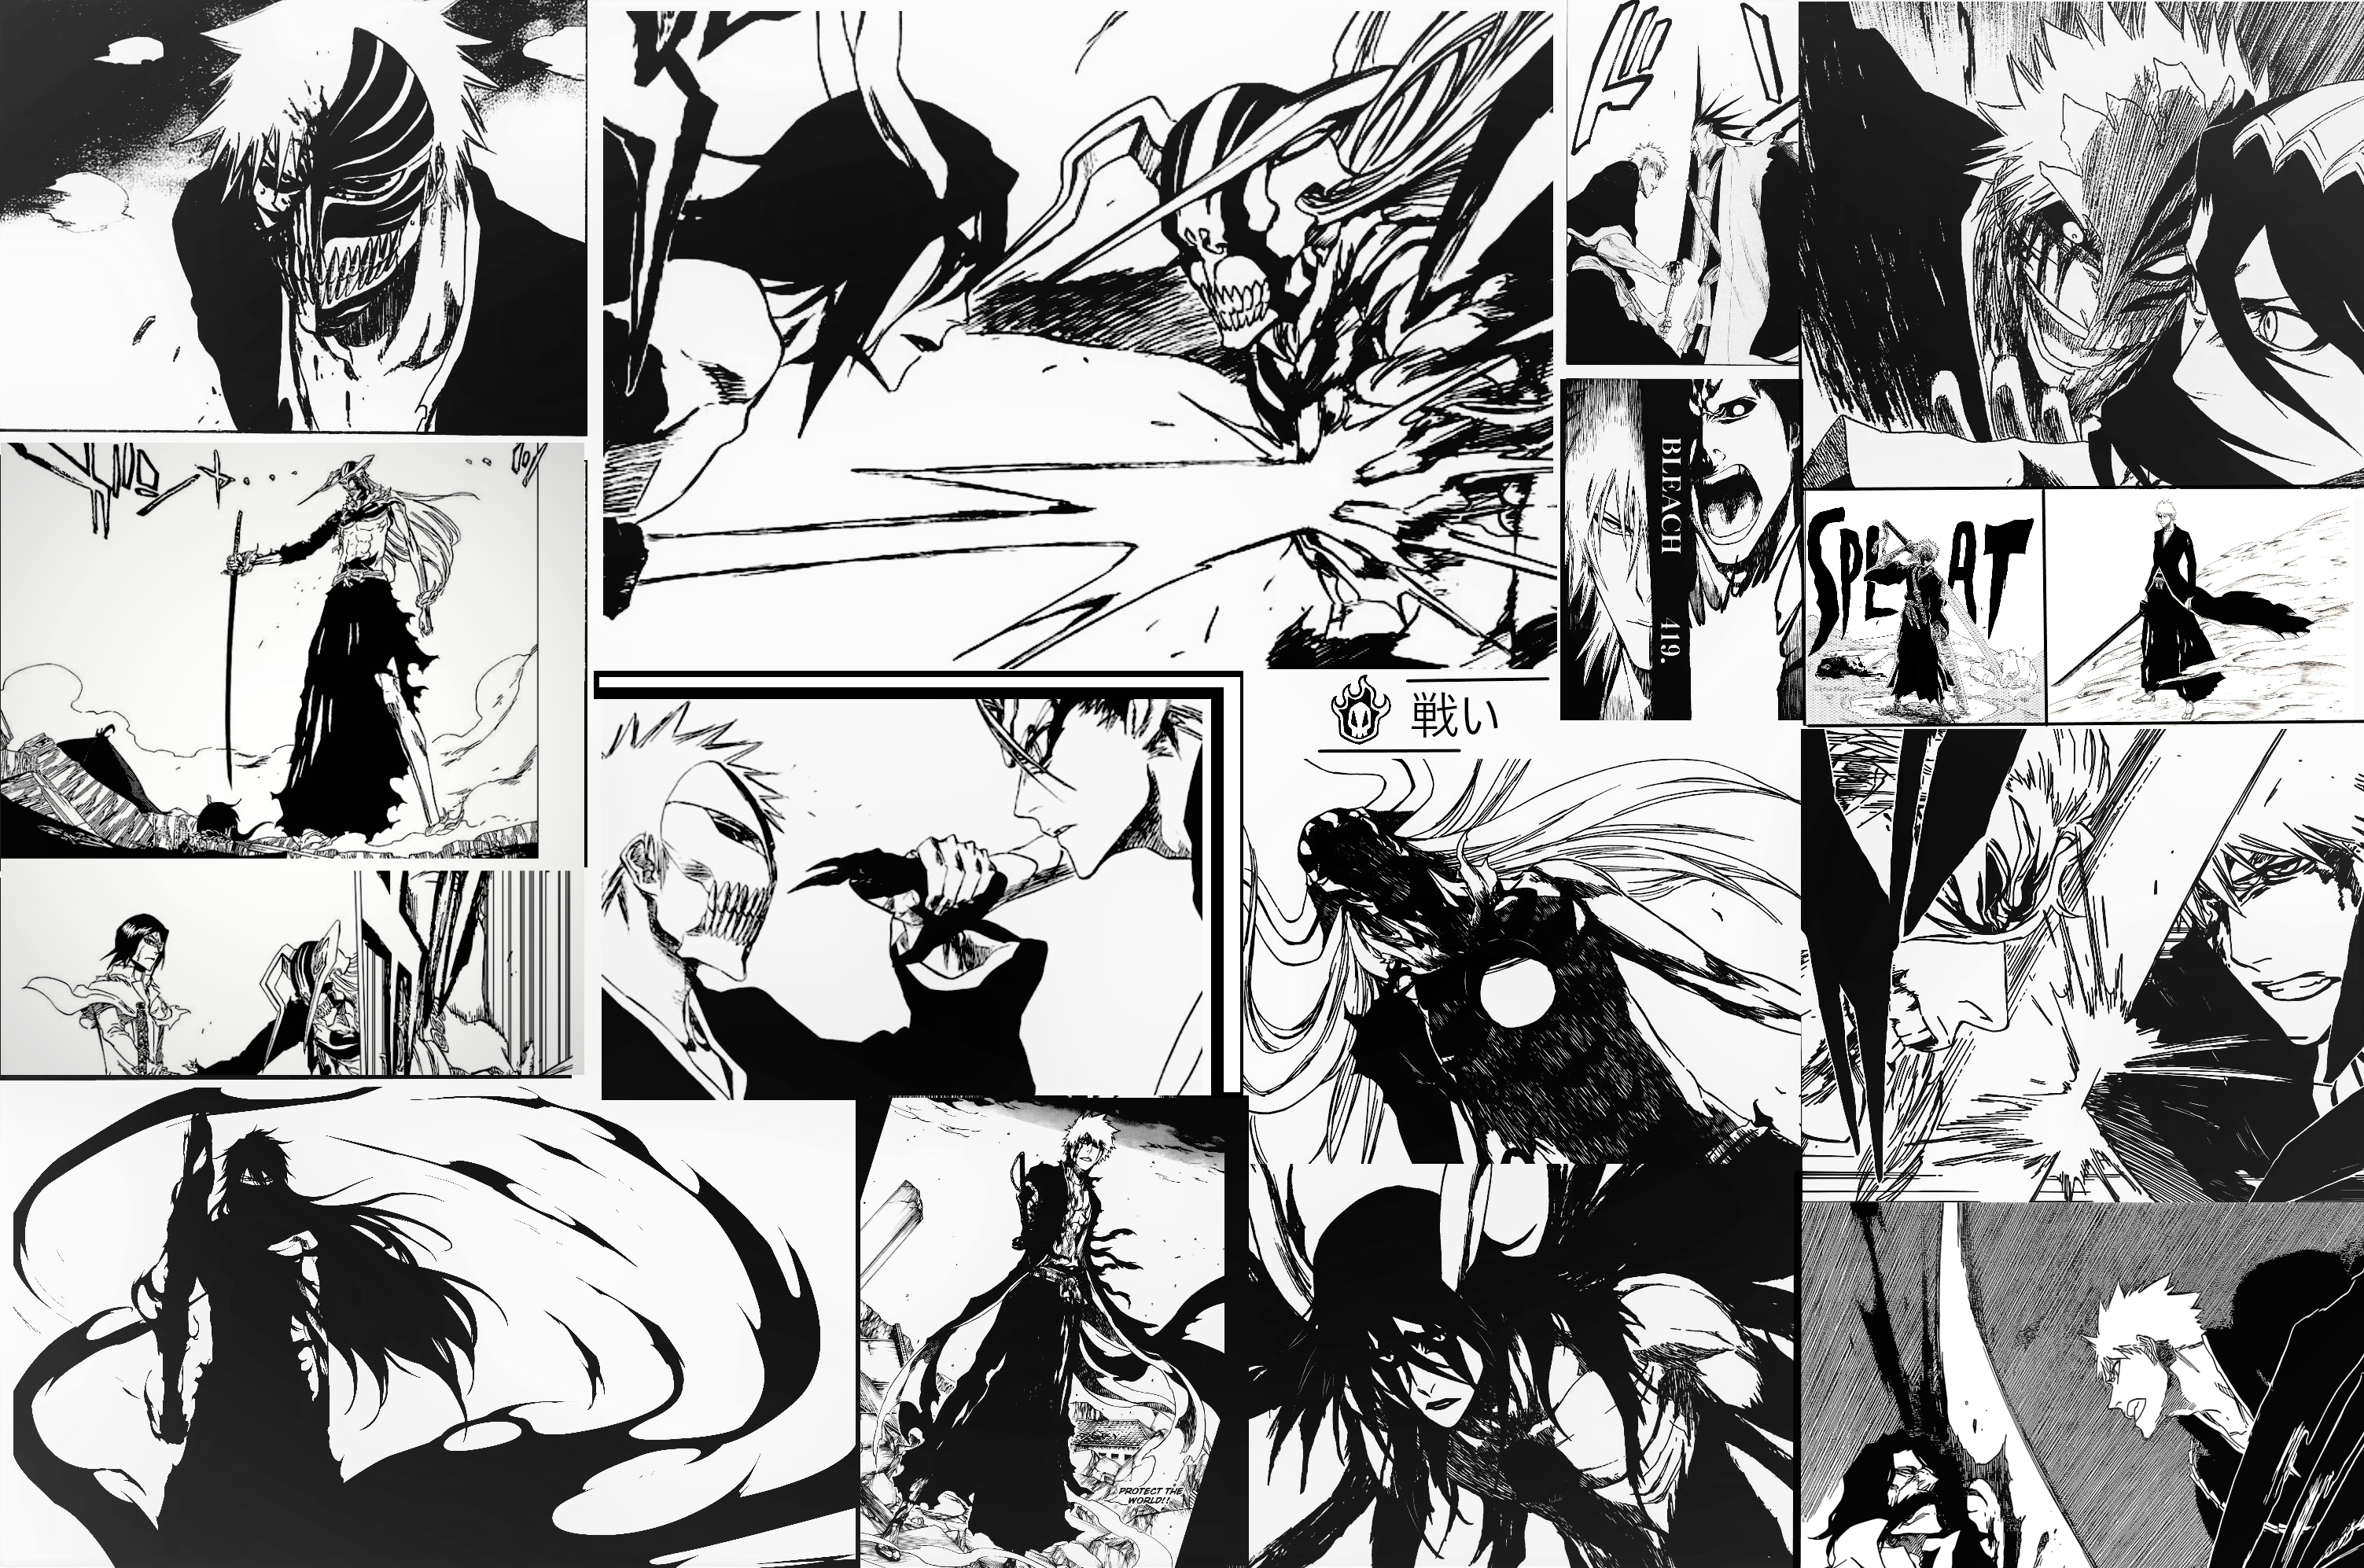 Manga Panel Wallpapers - Top Những Hình Ảnh Đẹp